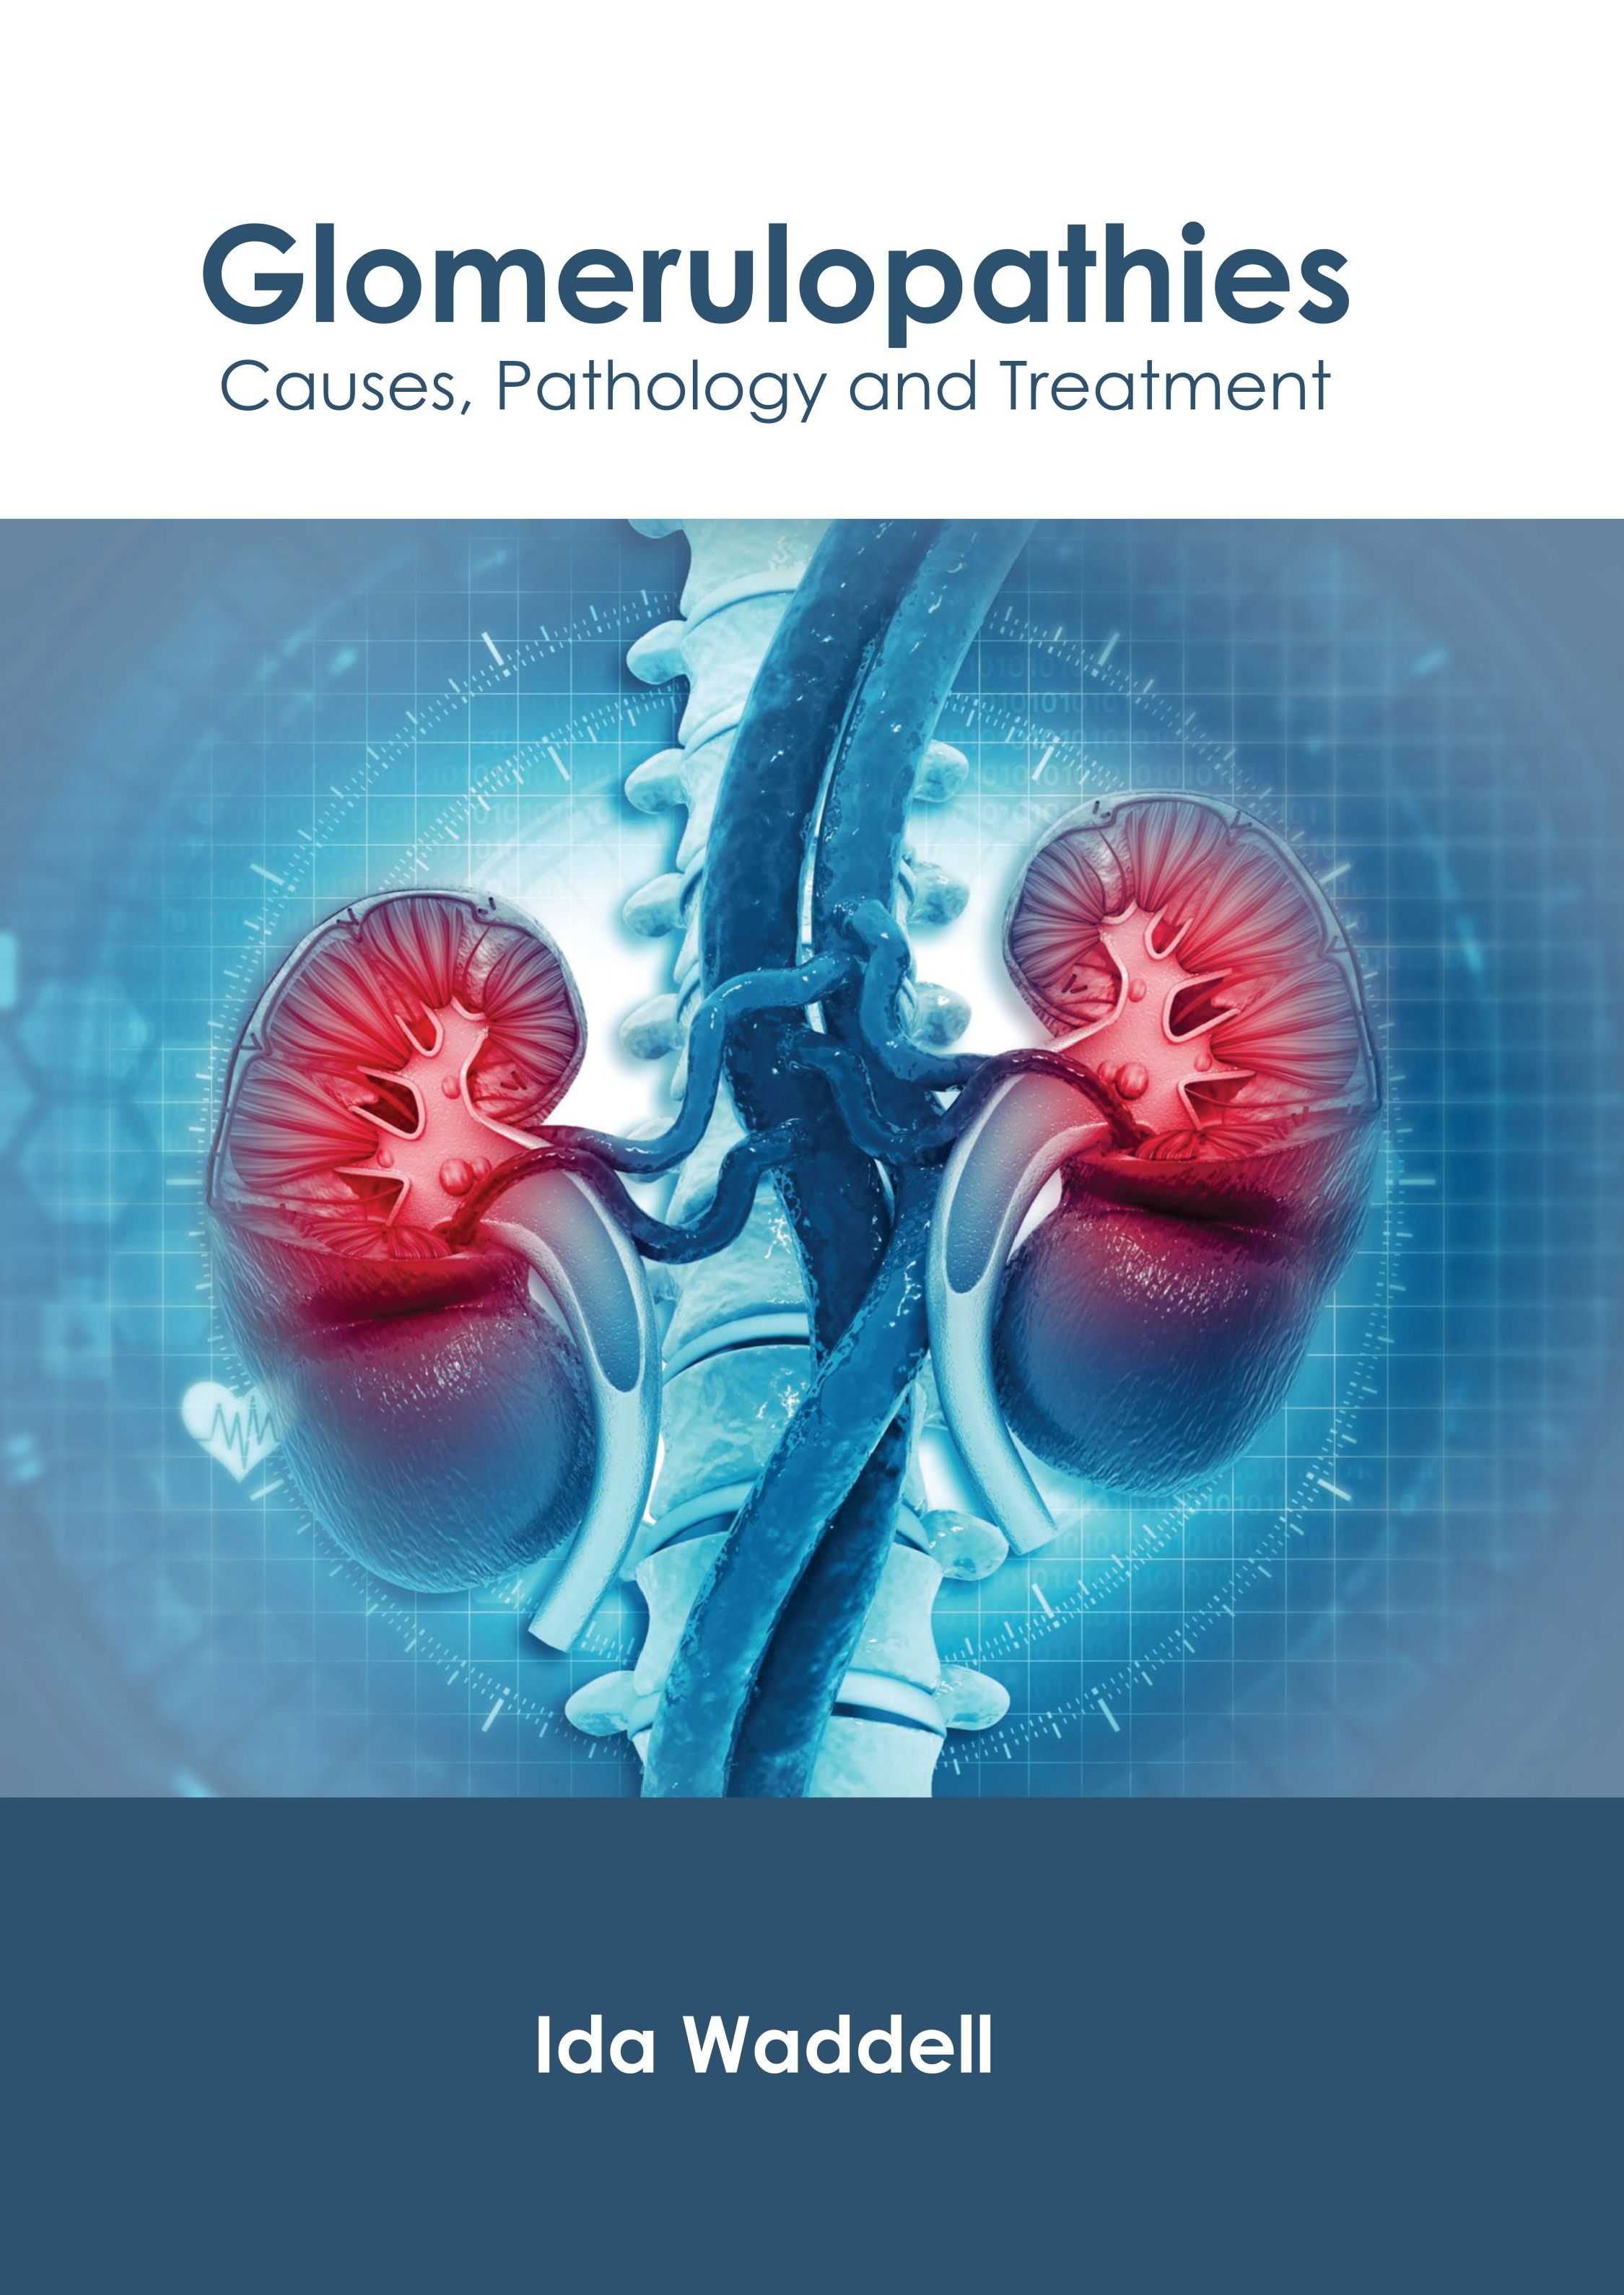 

medical-reference-books/nephrology/glomerulopathies-causes-pathology-and-treatment-9798887401362